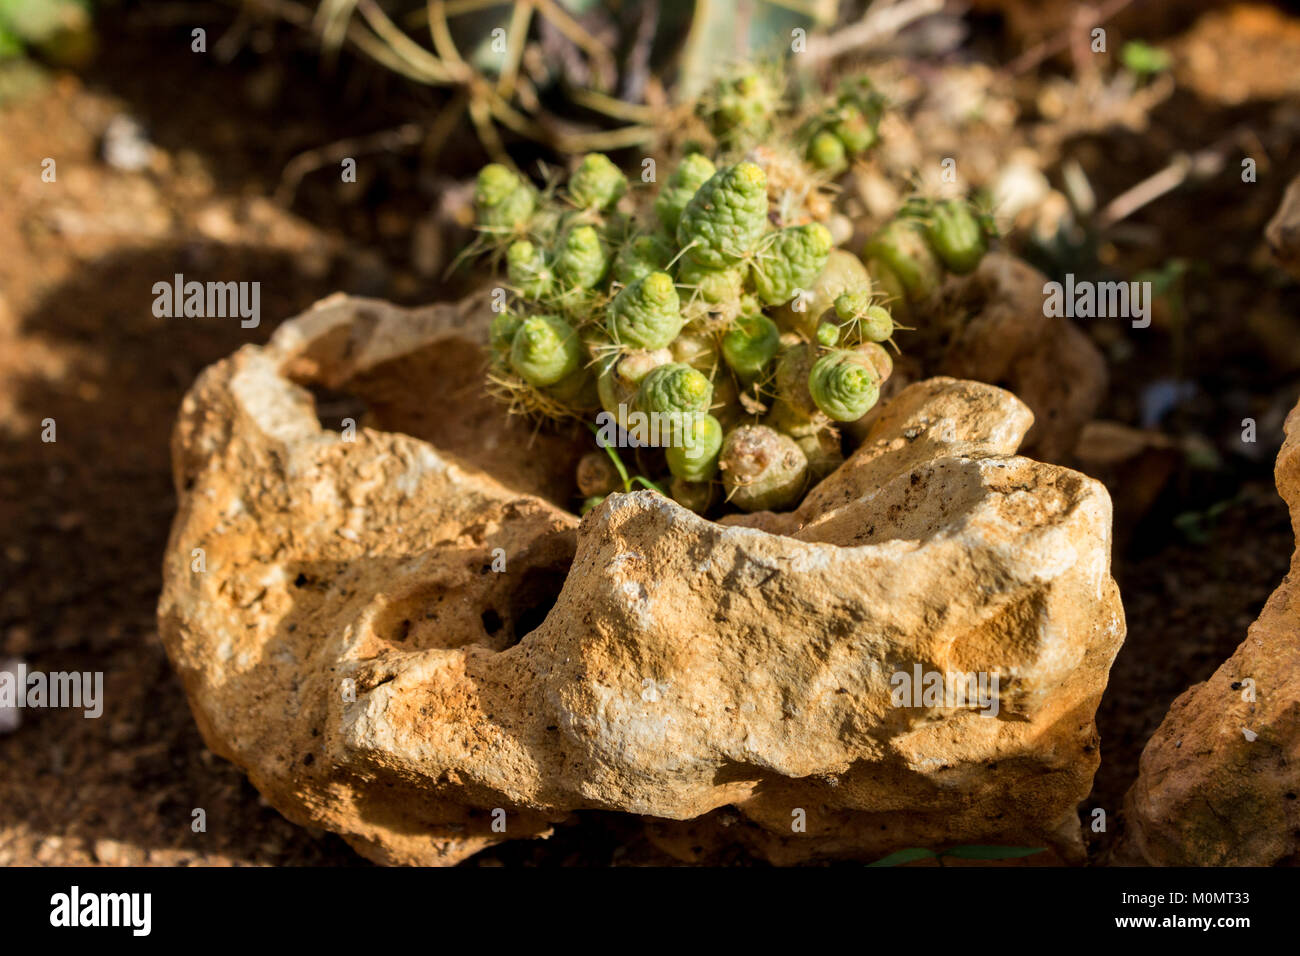 Piante succulente che cresce su una roccia, close up shot Foto Stock